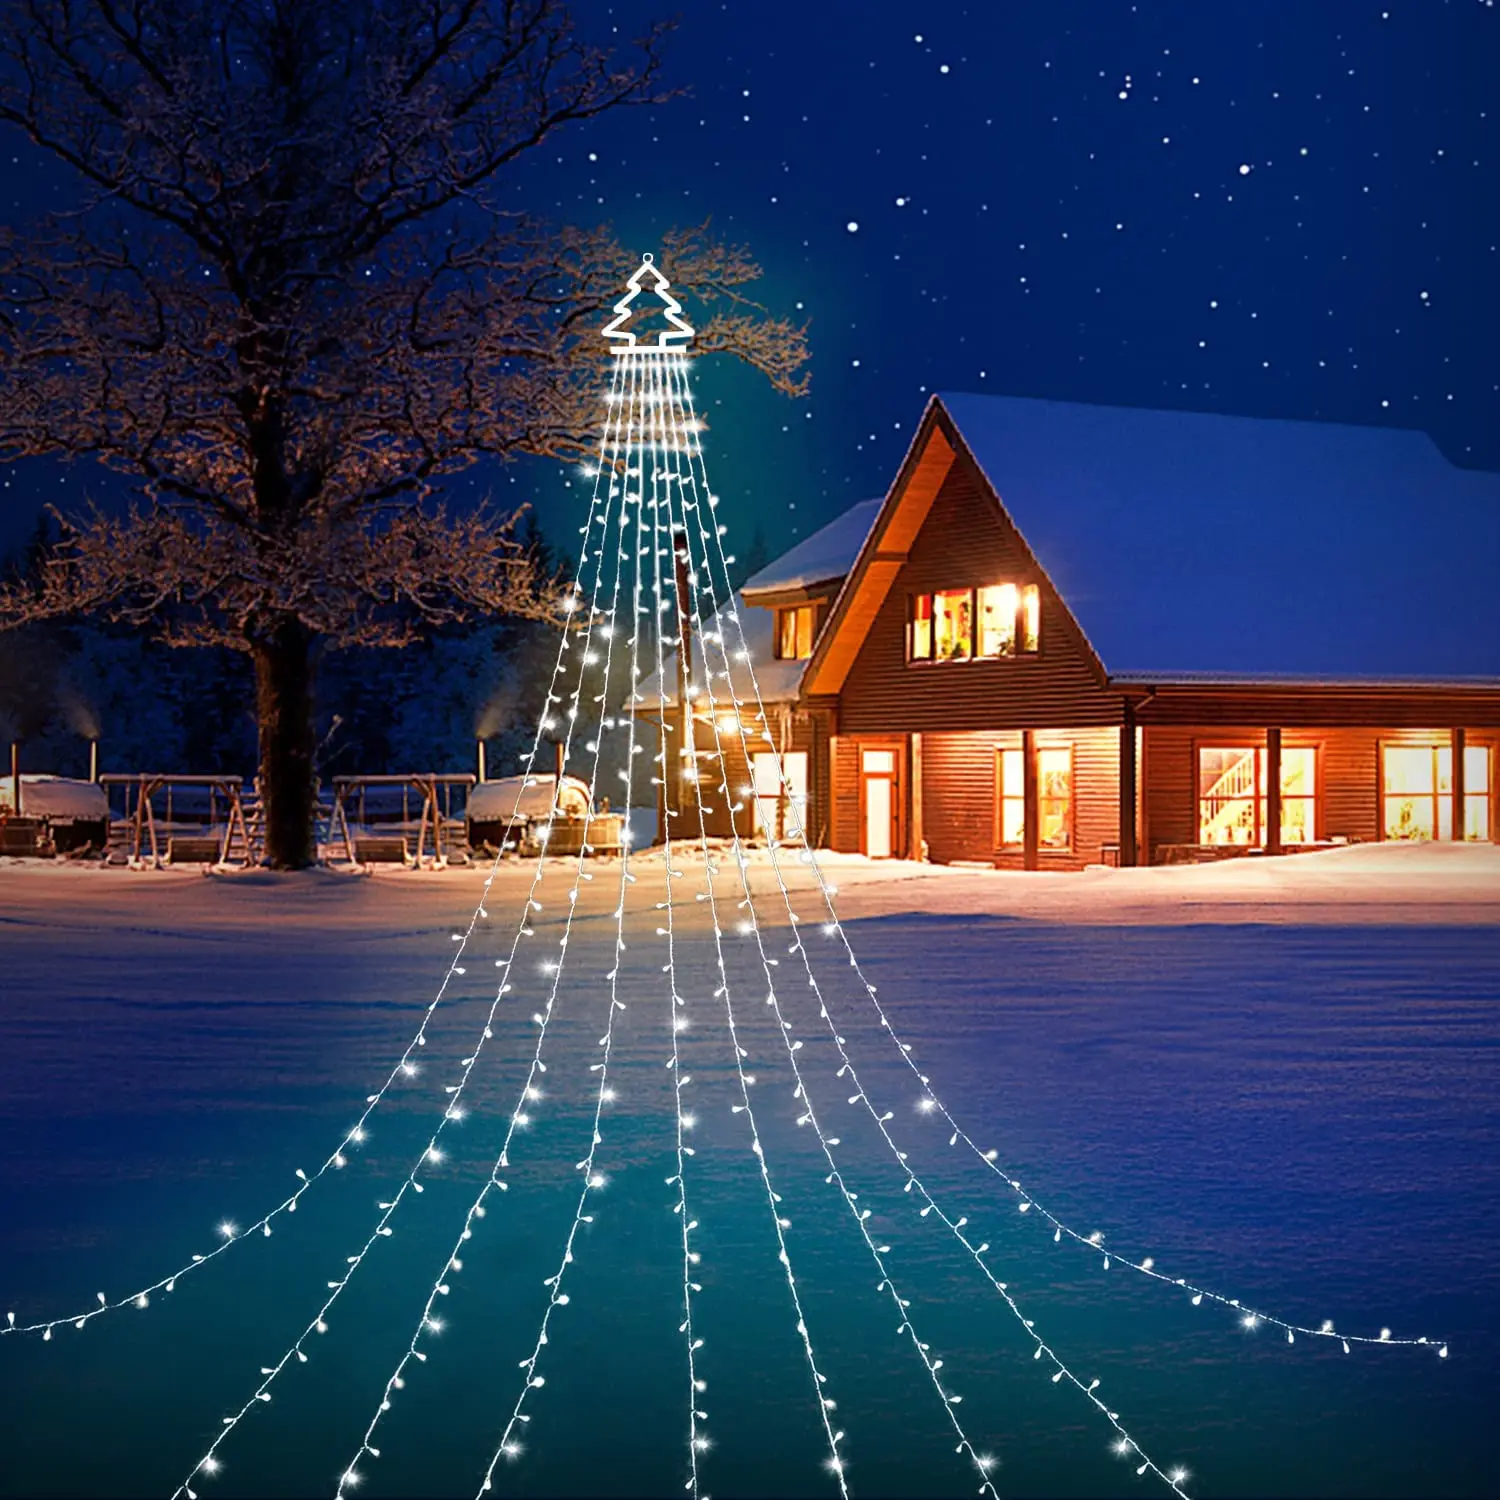 Terproof solar star string lights garland christmas decoration for navidad garden party thumb200